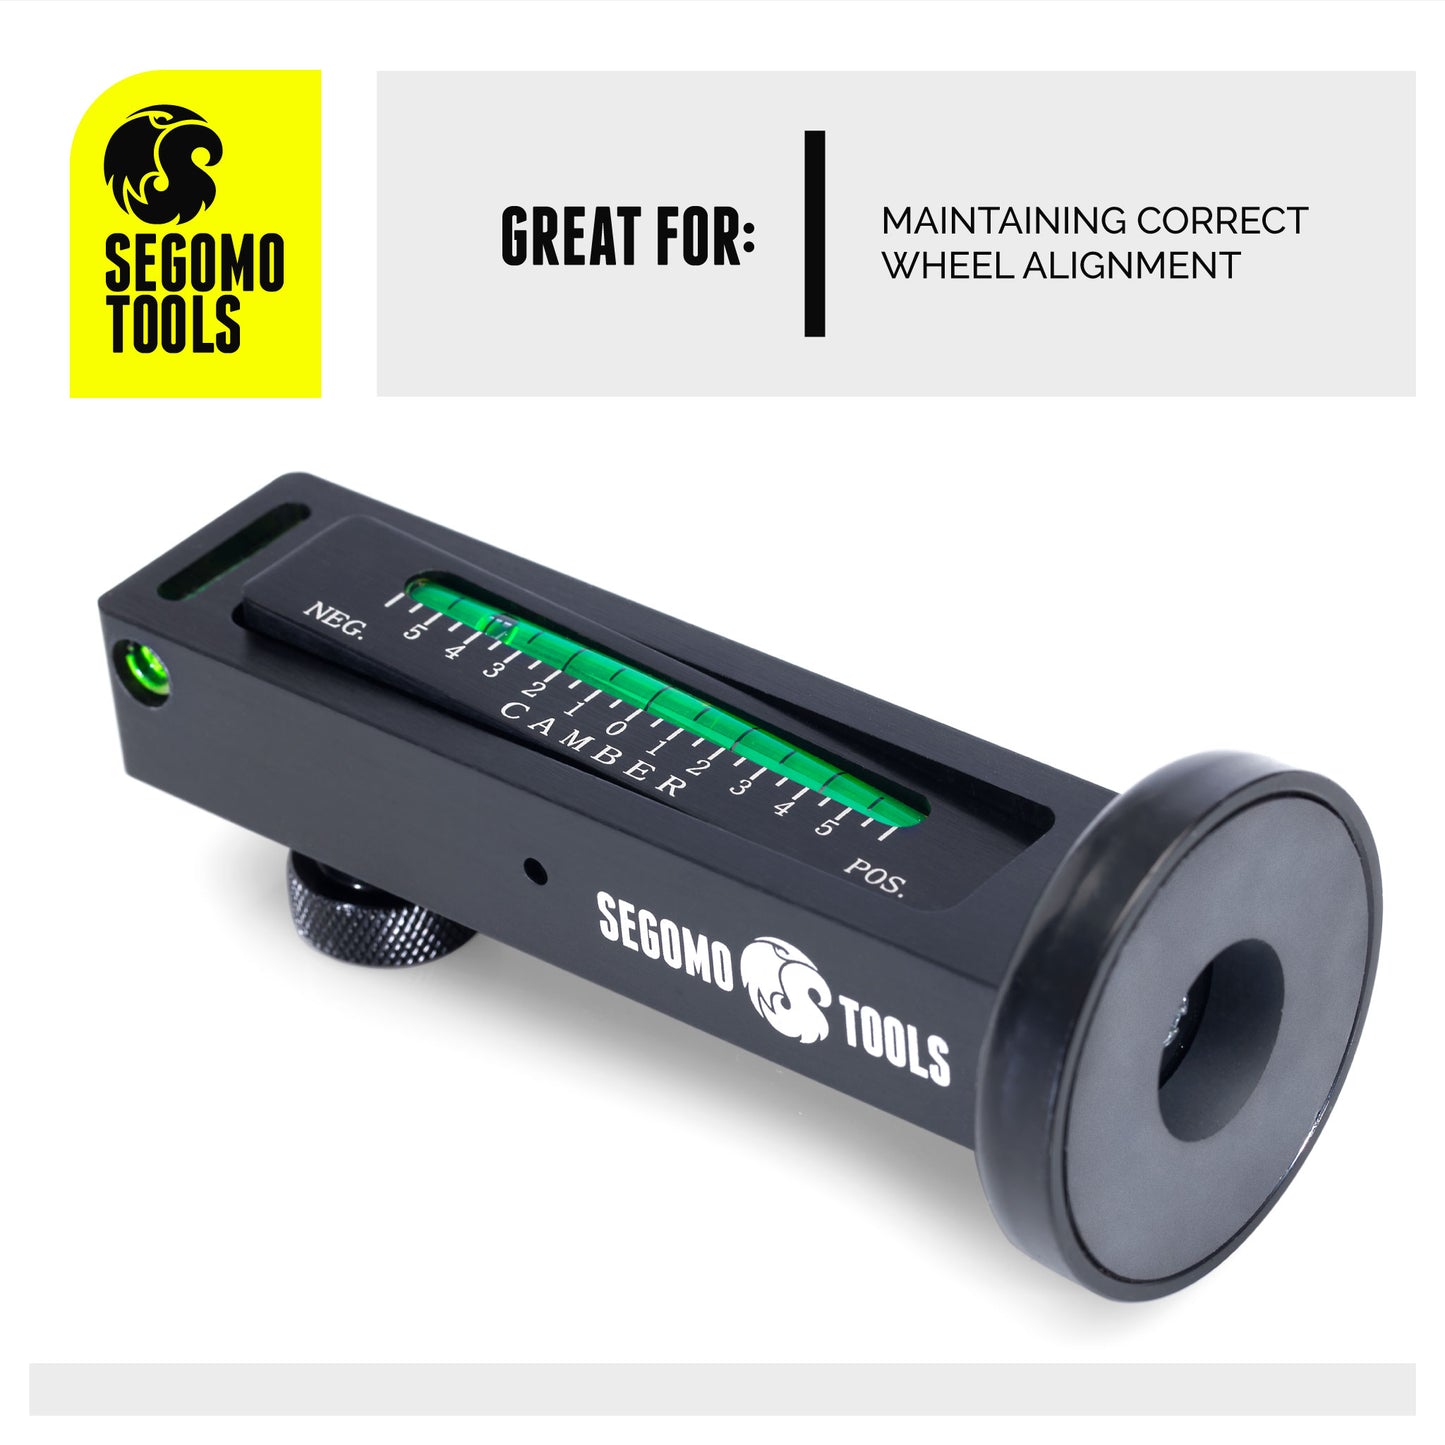 Segomo Tools Herramienta de alineación de puntal de calibre de rueda giratoria/inclinación magnética universal ajustable para automóviles/camiones/reparación de neumáticos - WCC01